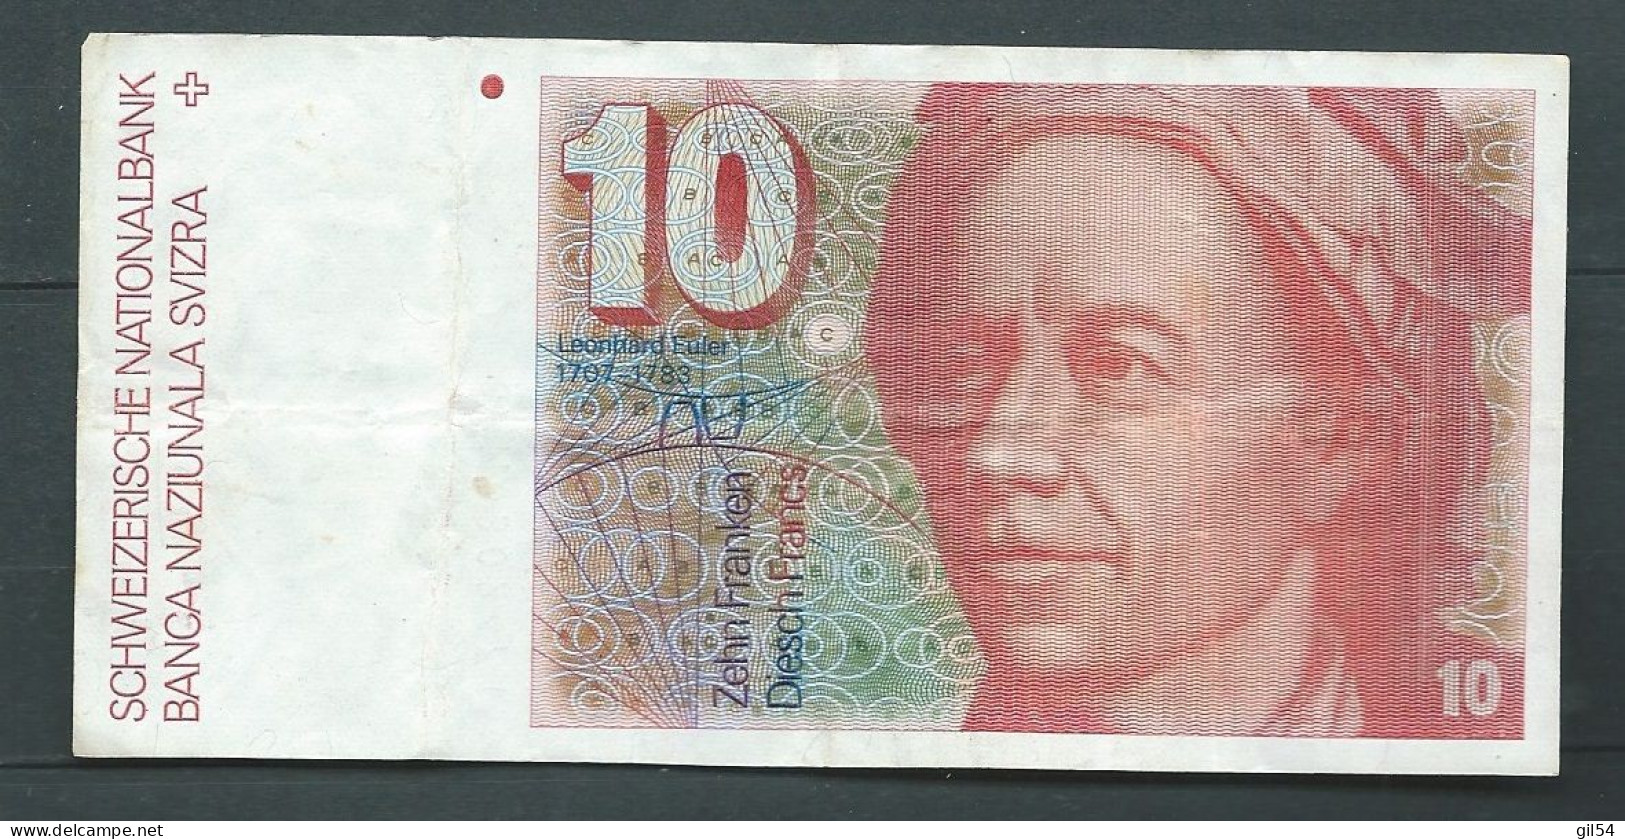 Billet 10 Francs 1987 Svizzera Suisse Schweiz 80M0302471  --  Laura14328 - Switzerland